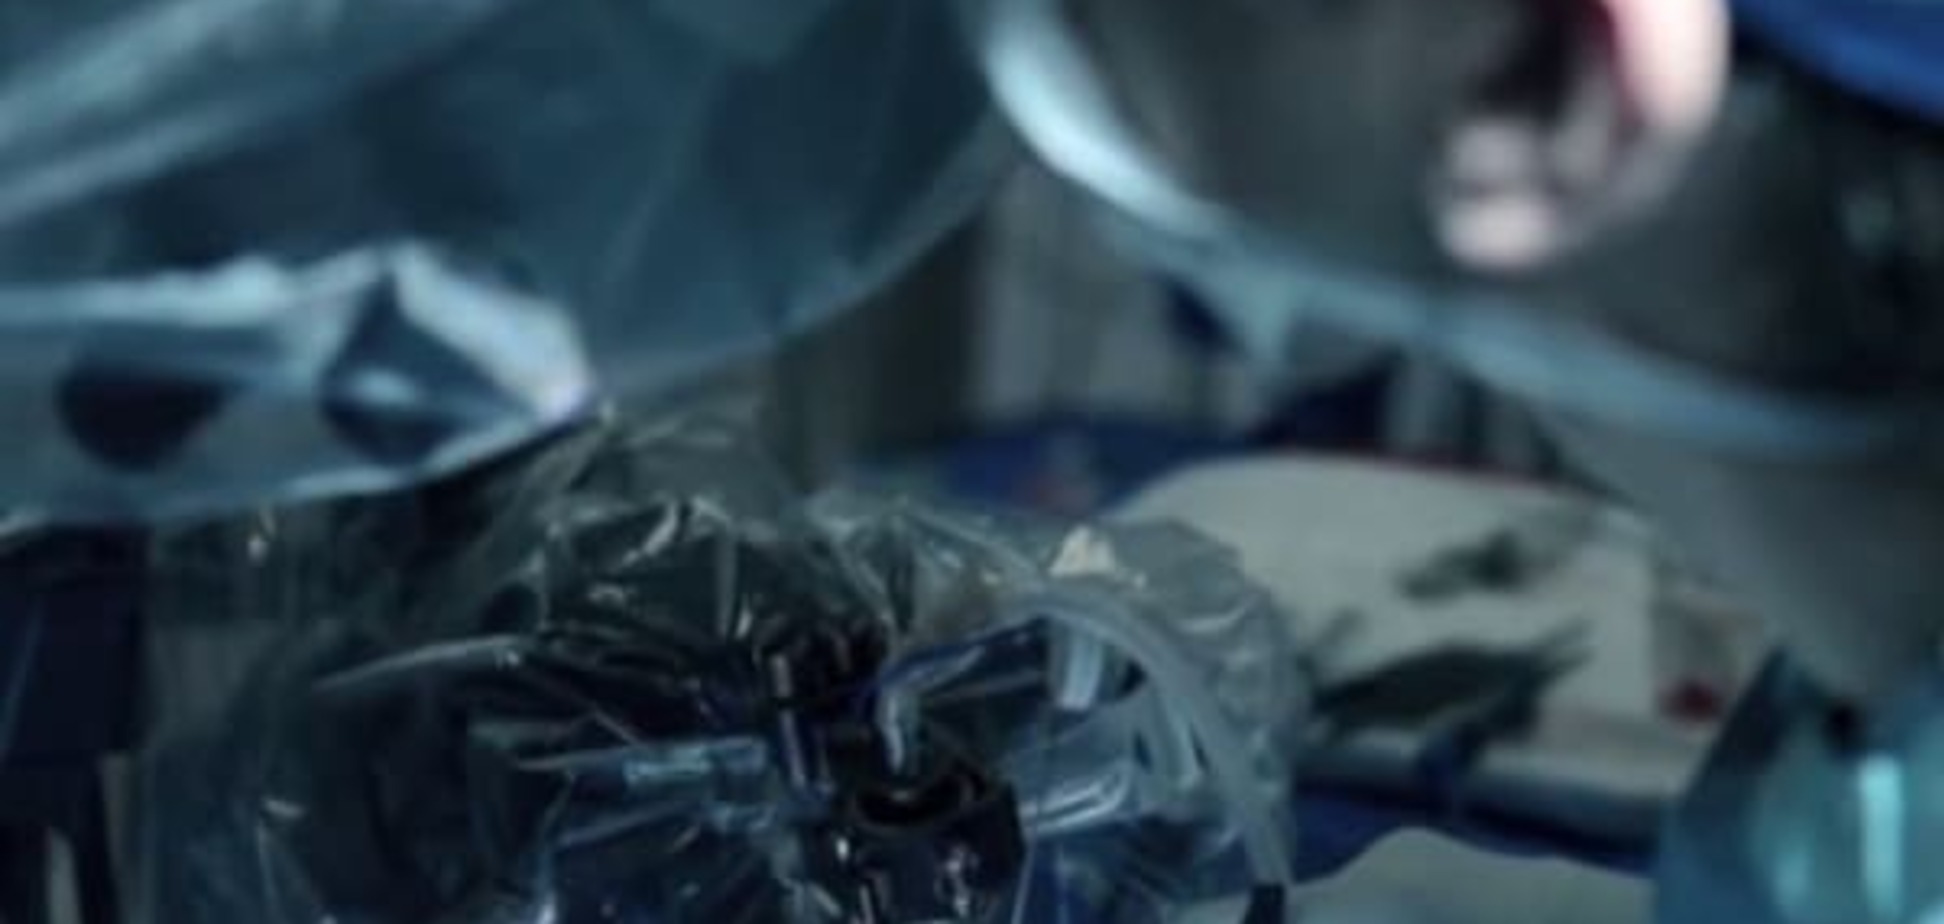 Технологии будущего: ученые работают над созданием эндоскопического робота-хирурга